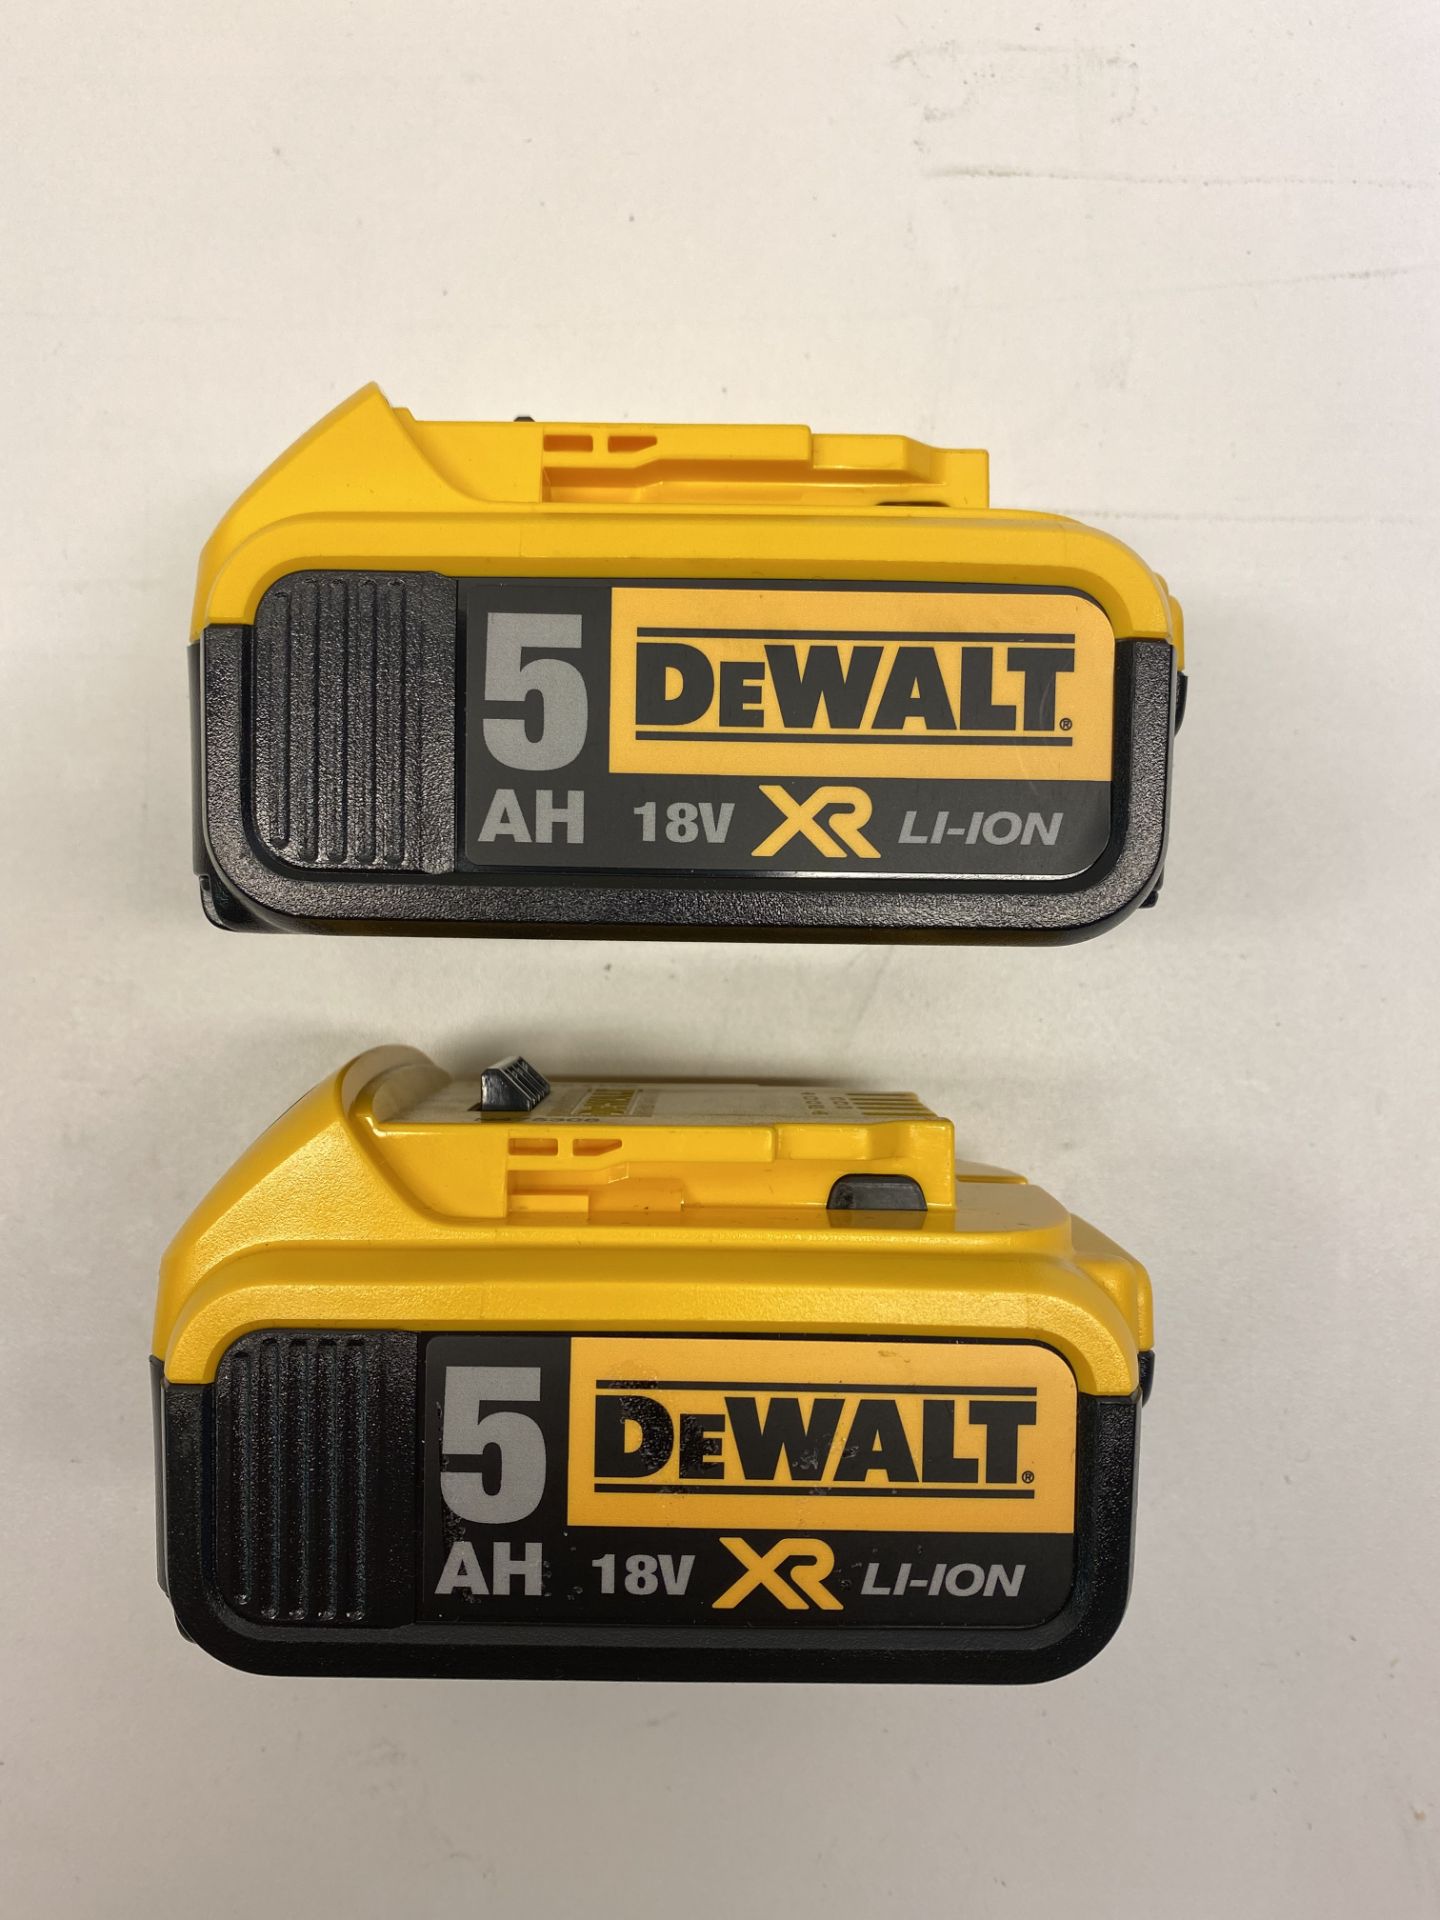 DeWalt DCB115 Battery Charger w/ 2 x DeWalt DCB184 18V Batteries - Image 2 of 8